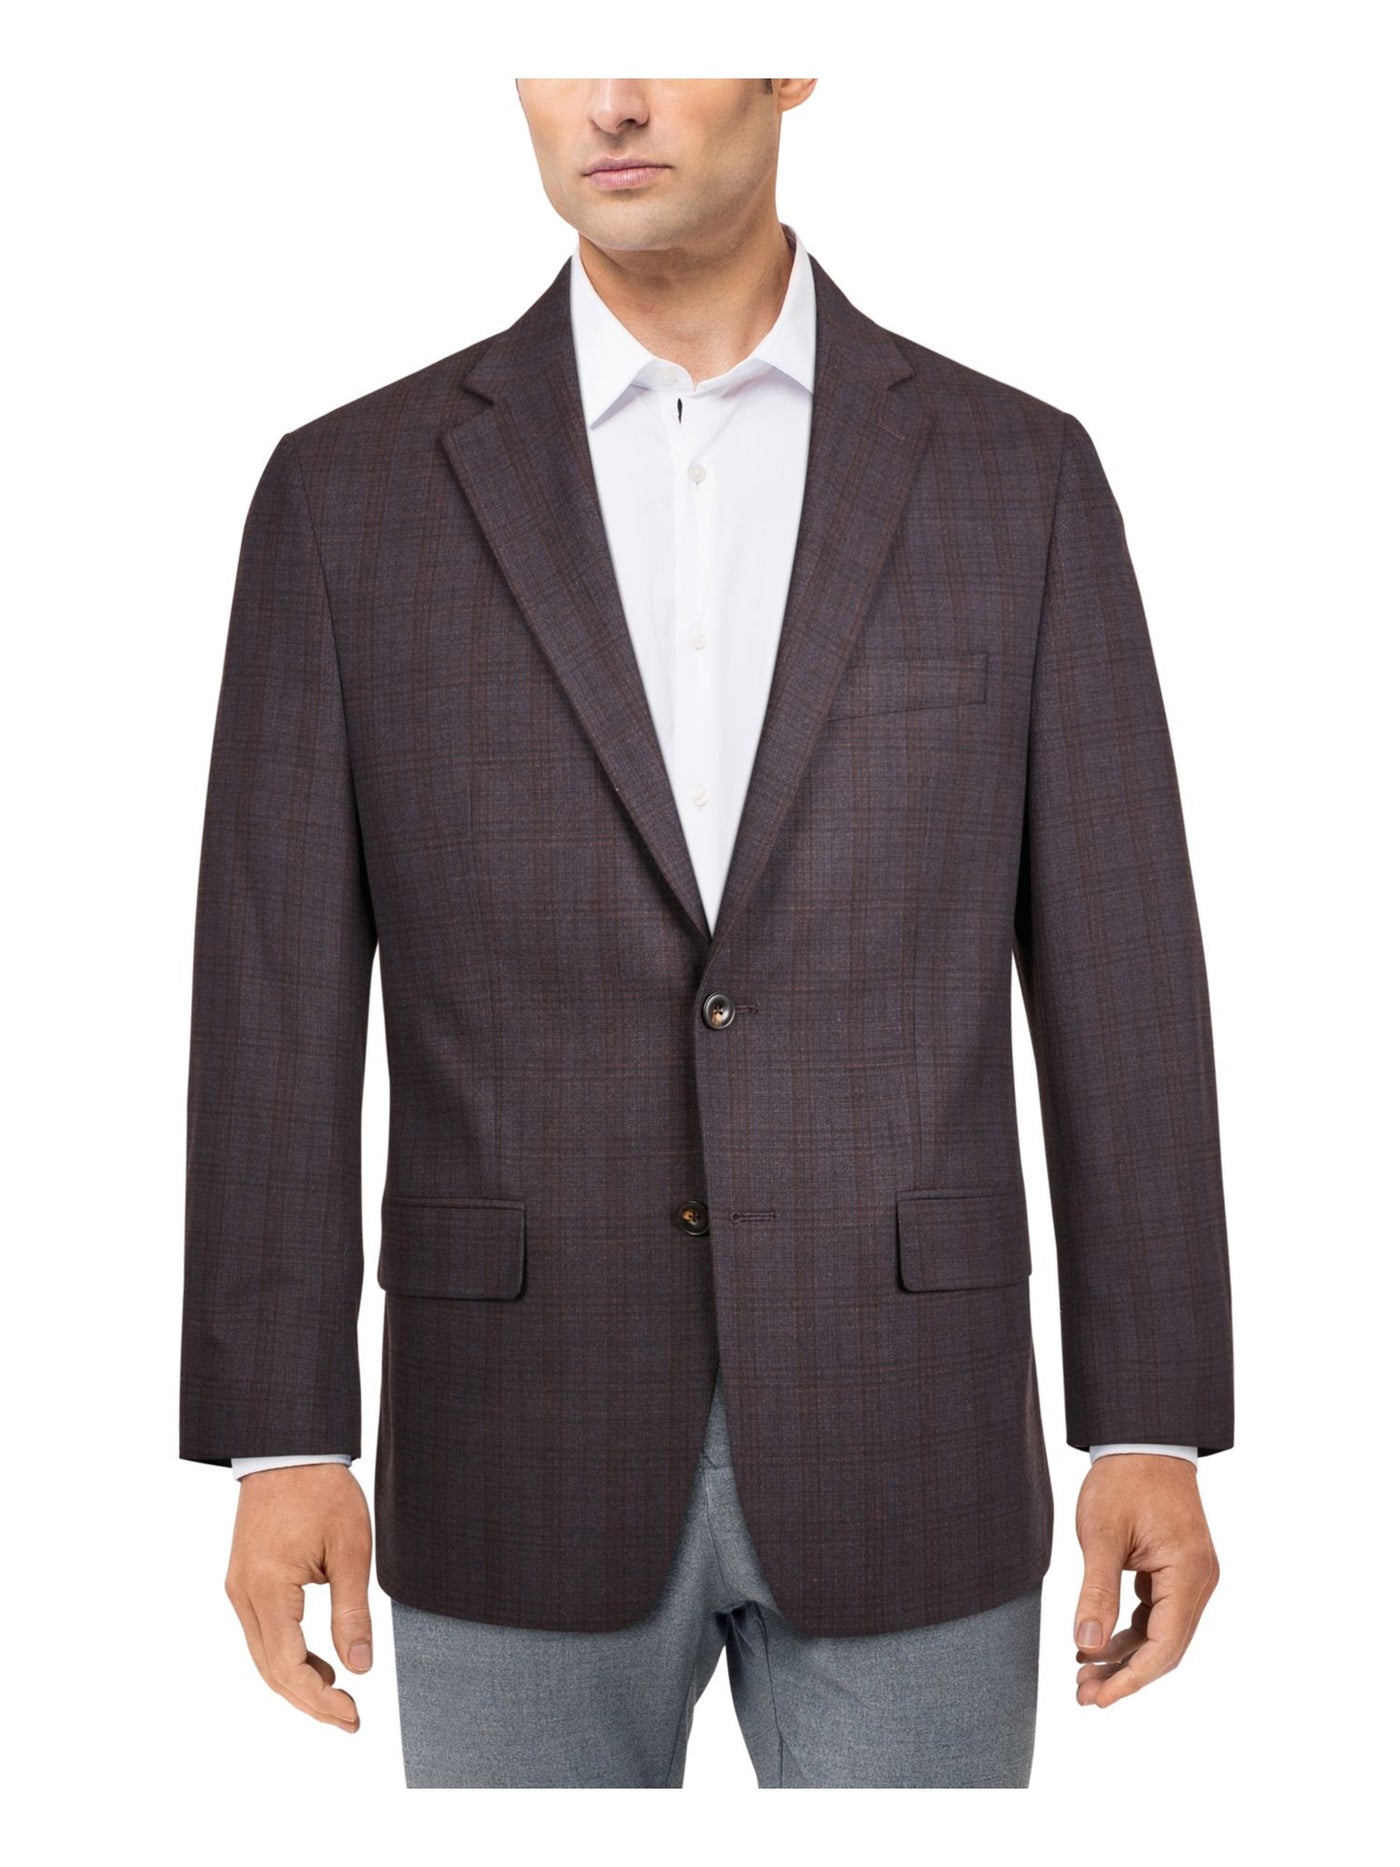 MICHAEL KORS Mens Purple Check Suit Jacket 44 SHORT